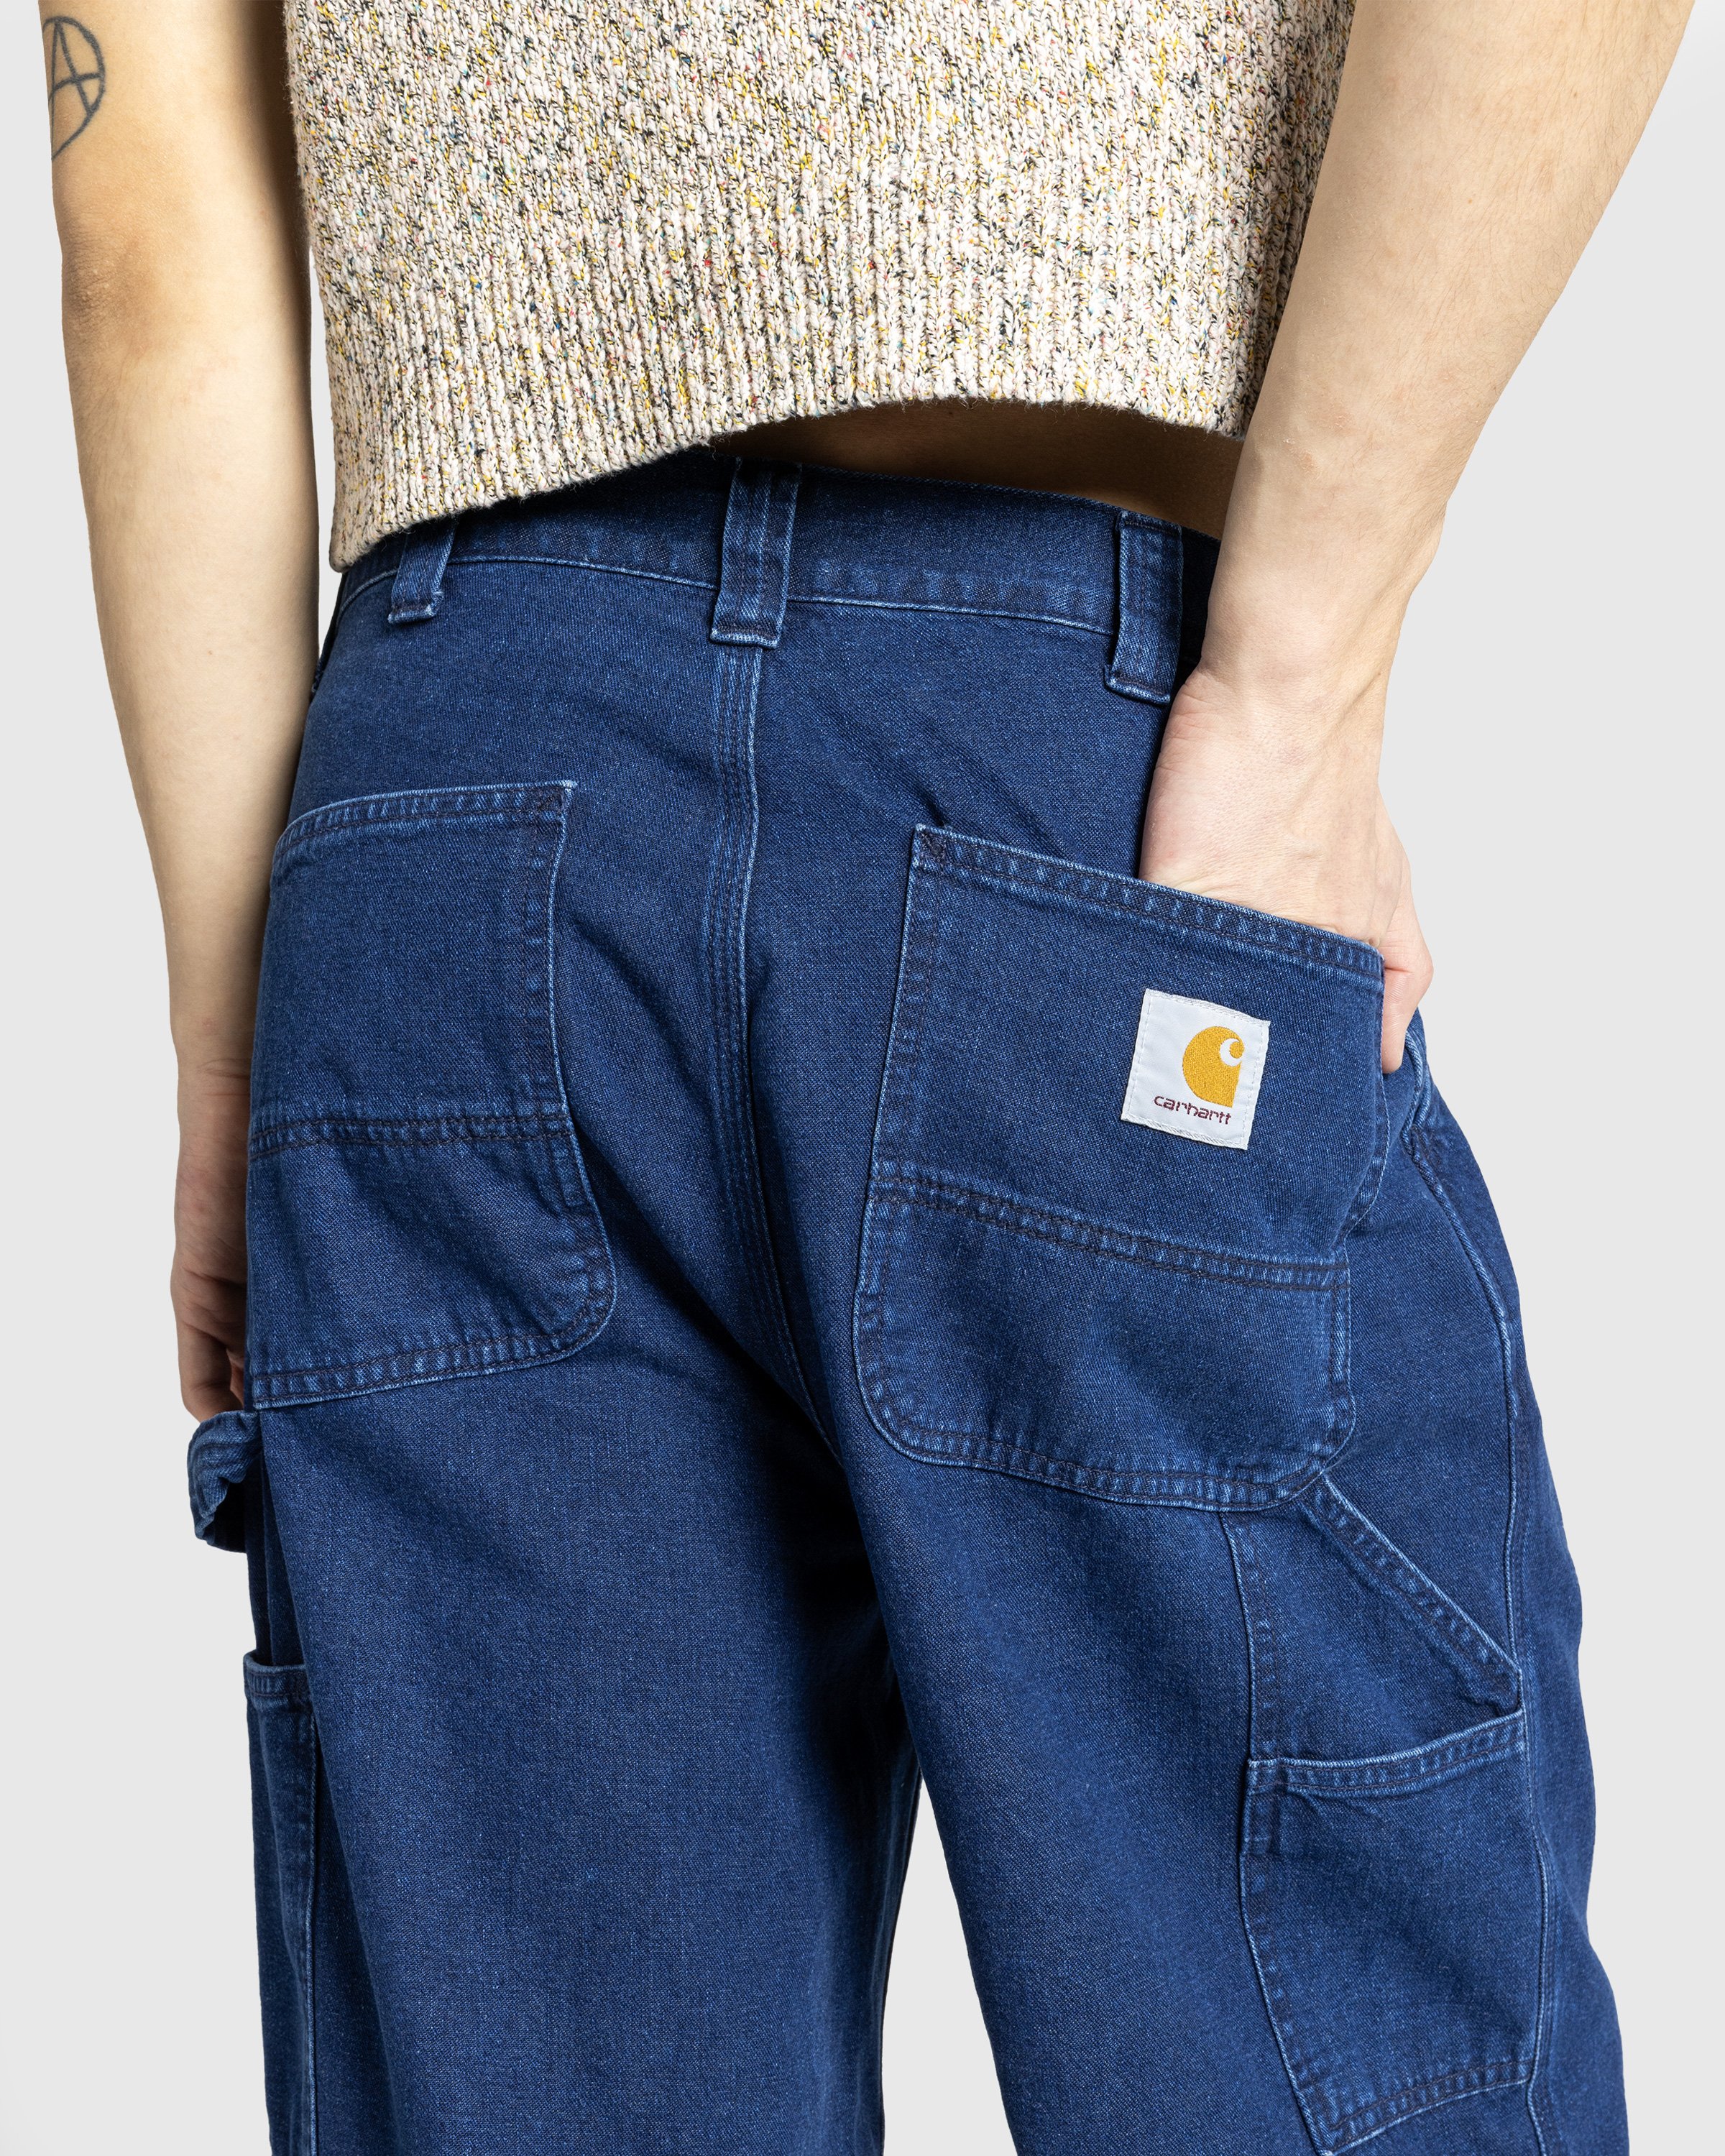 Carhartt WIP - OG Single Knee Pant Blue /stone washed - Clothing - Blue - Image 5